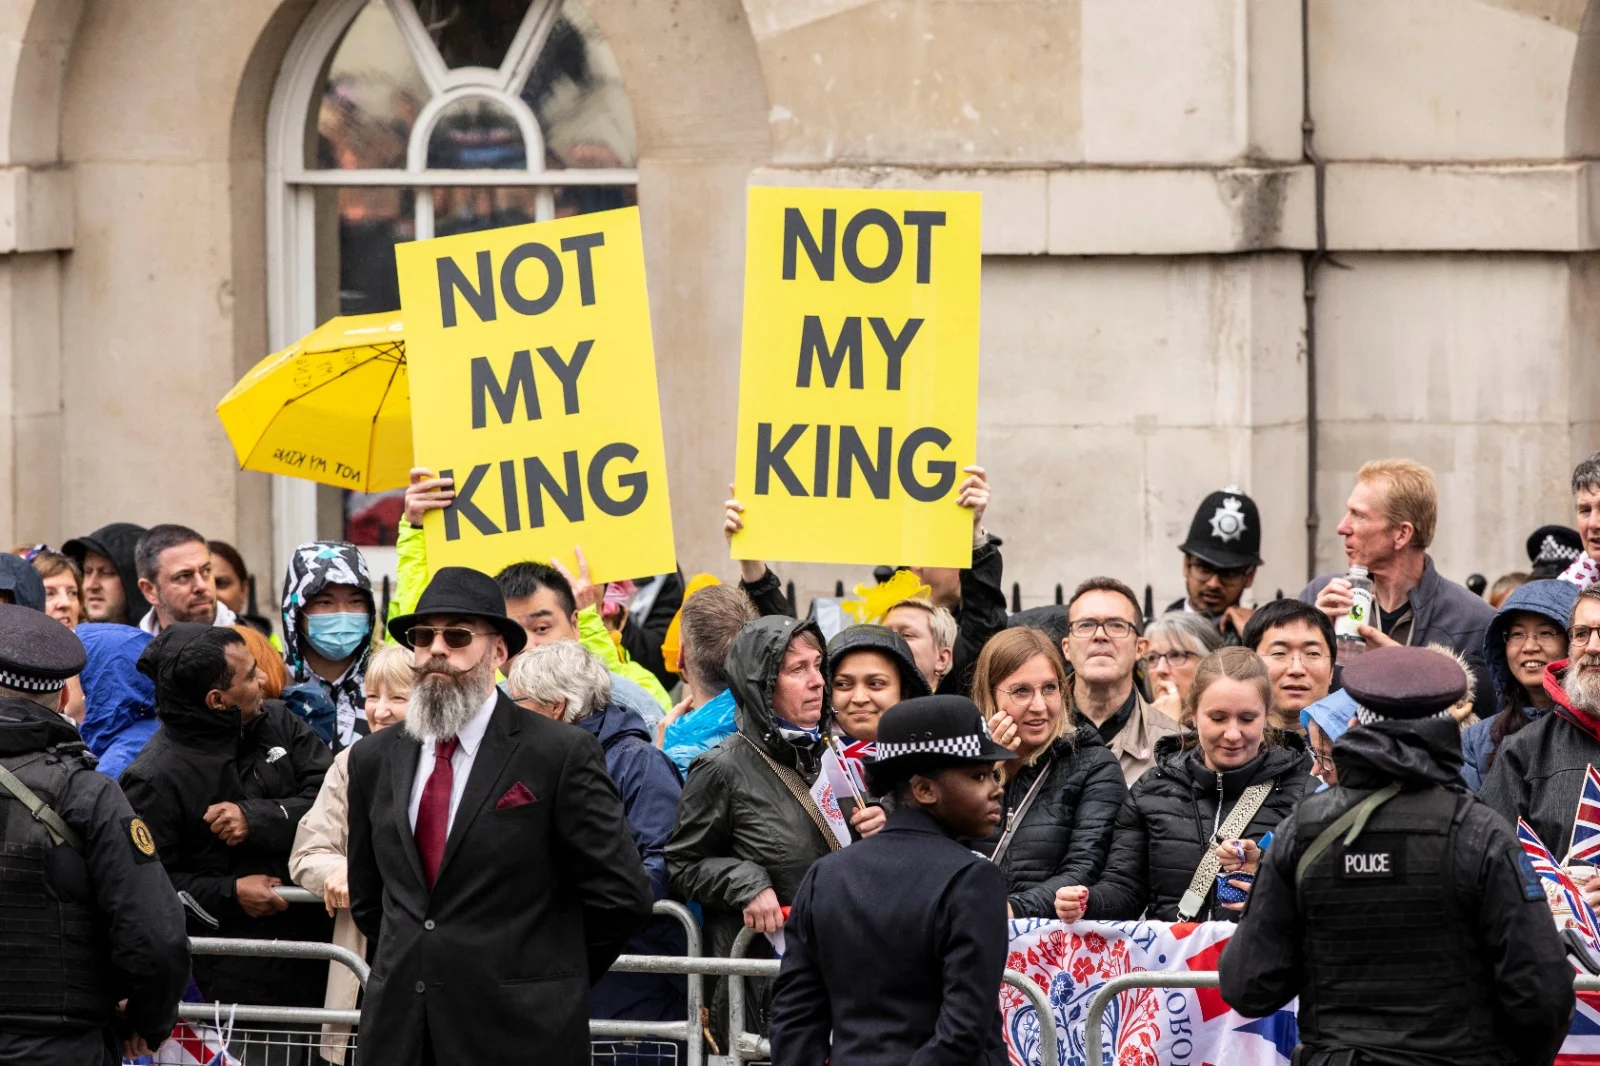 מפגינים אנטי- מלוכניים עם שלטים האומרים ''לא המלך שלי''